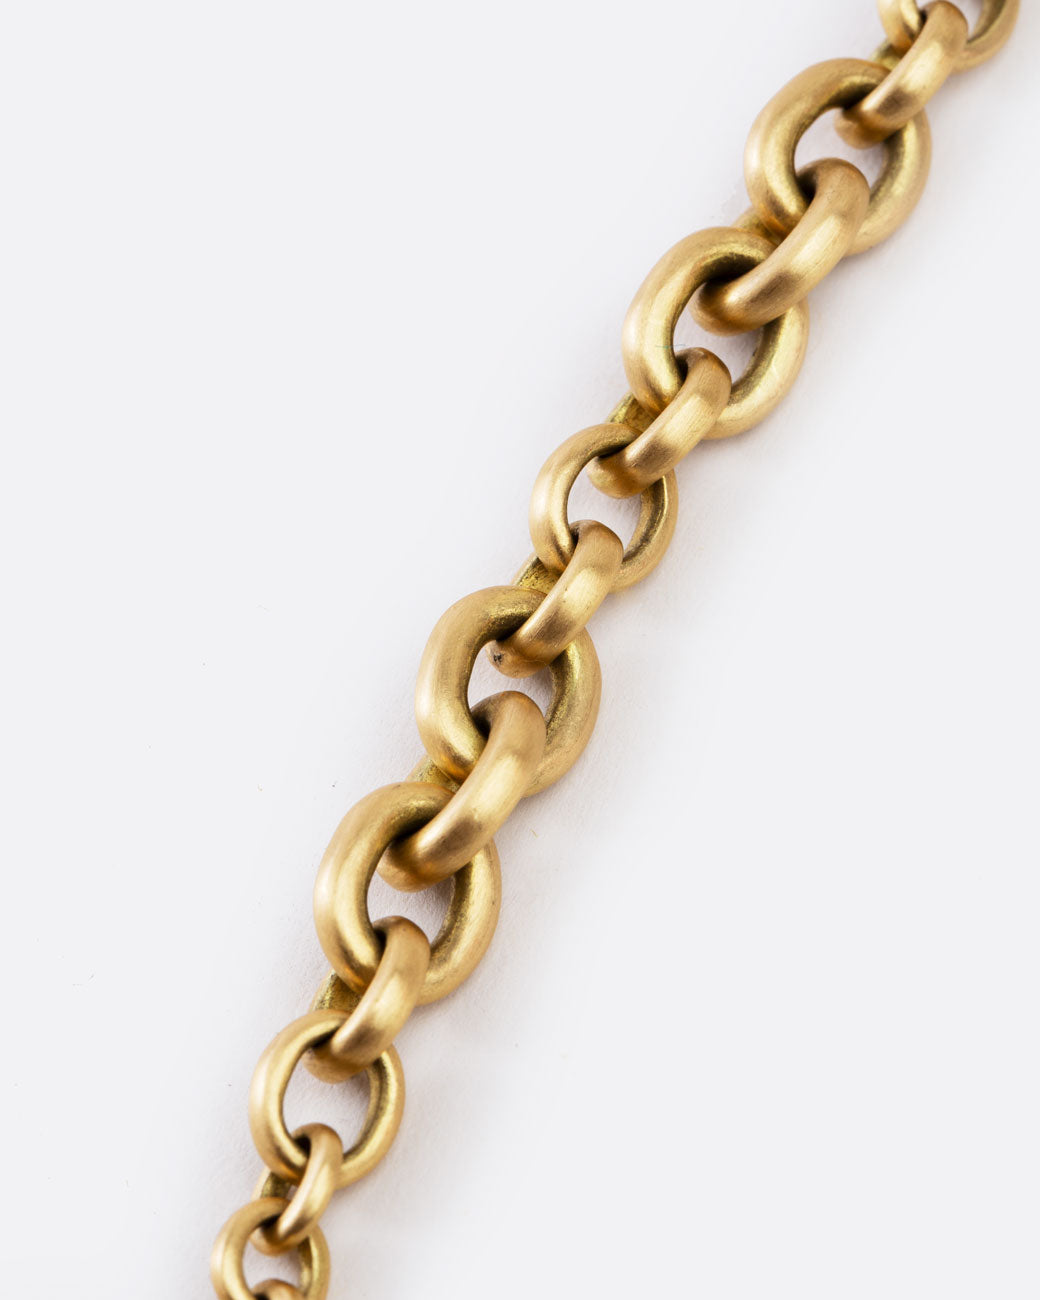 medium link bracelet of matte gold - close up on the link